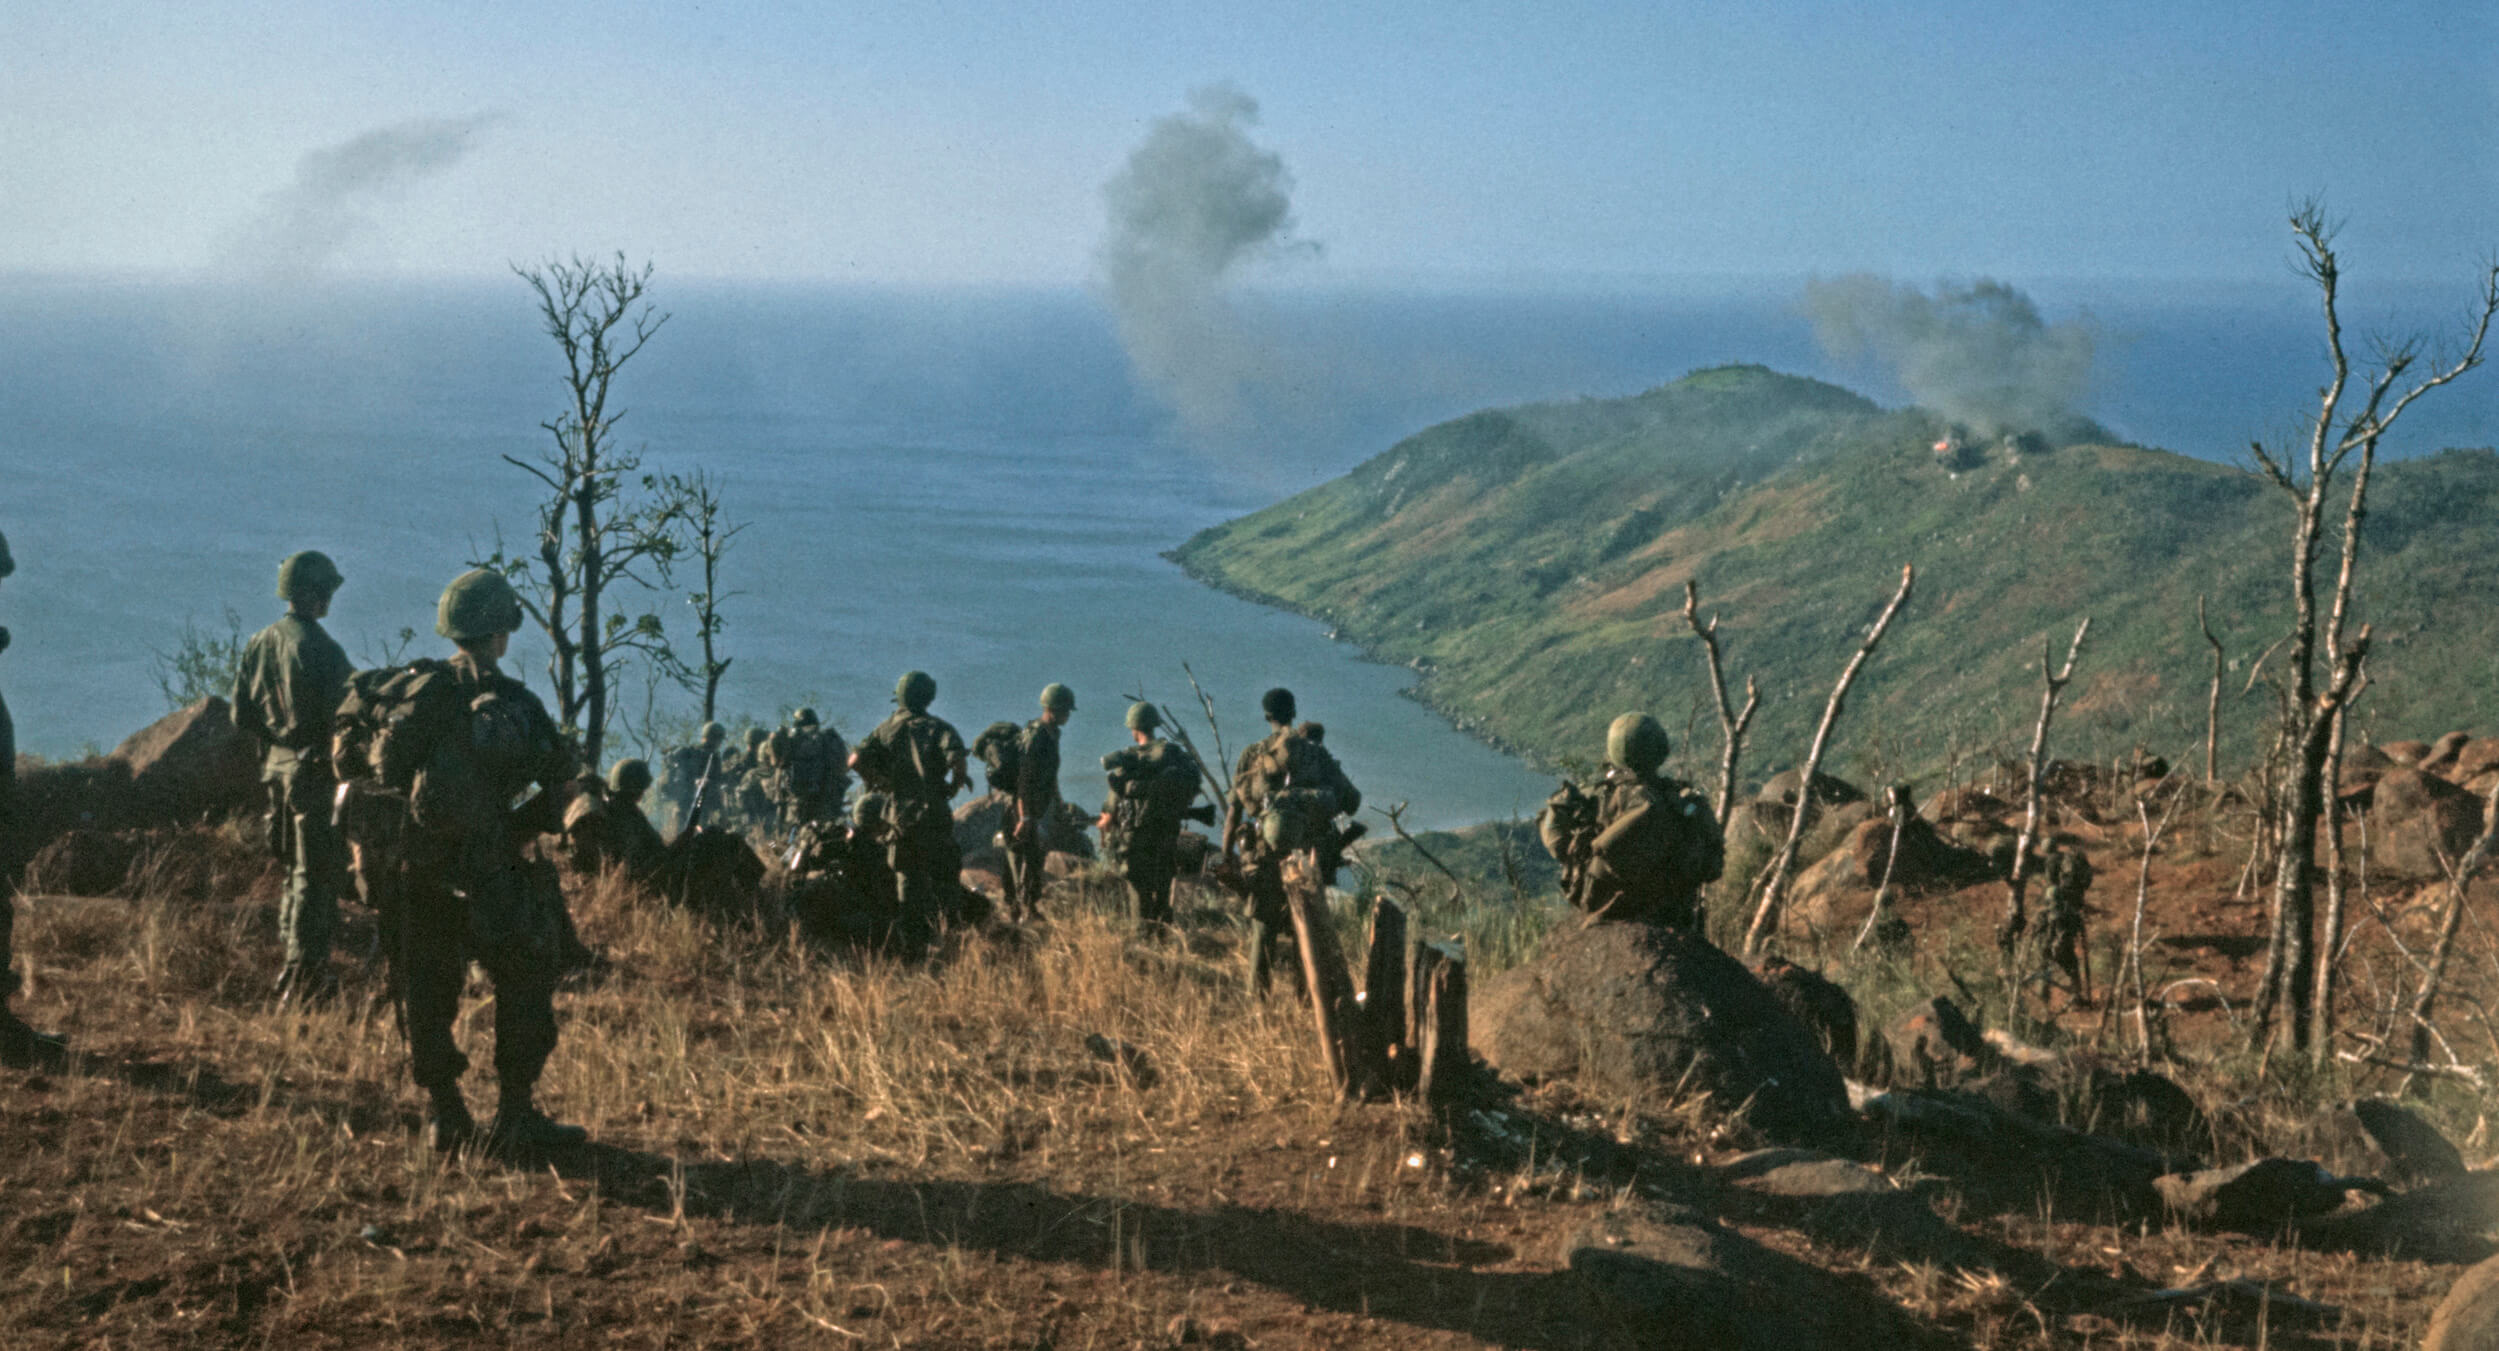 Refighting the Vietnam War › American Greatness